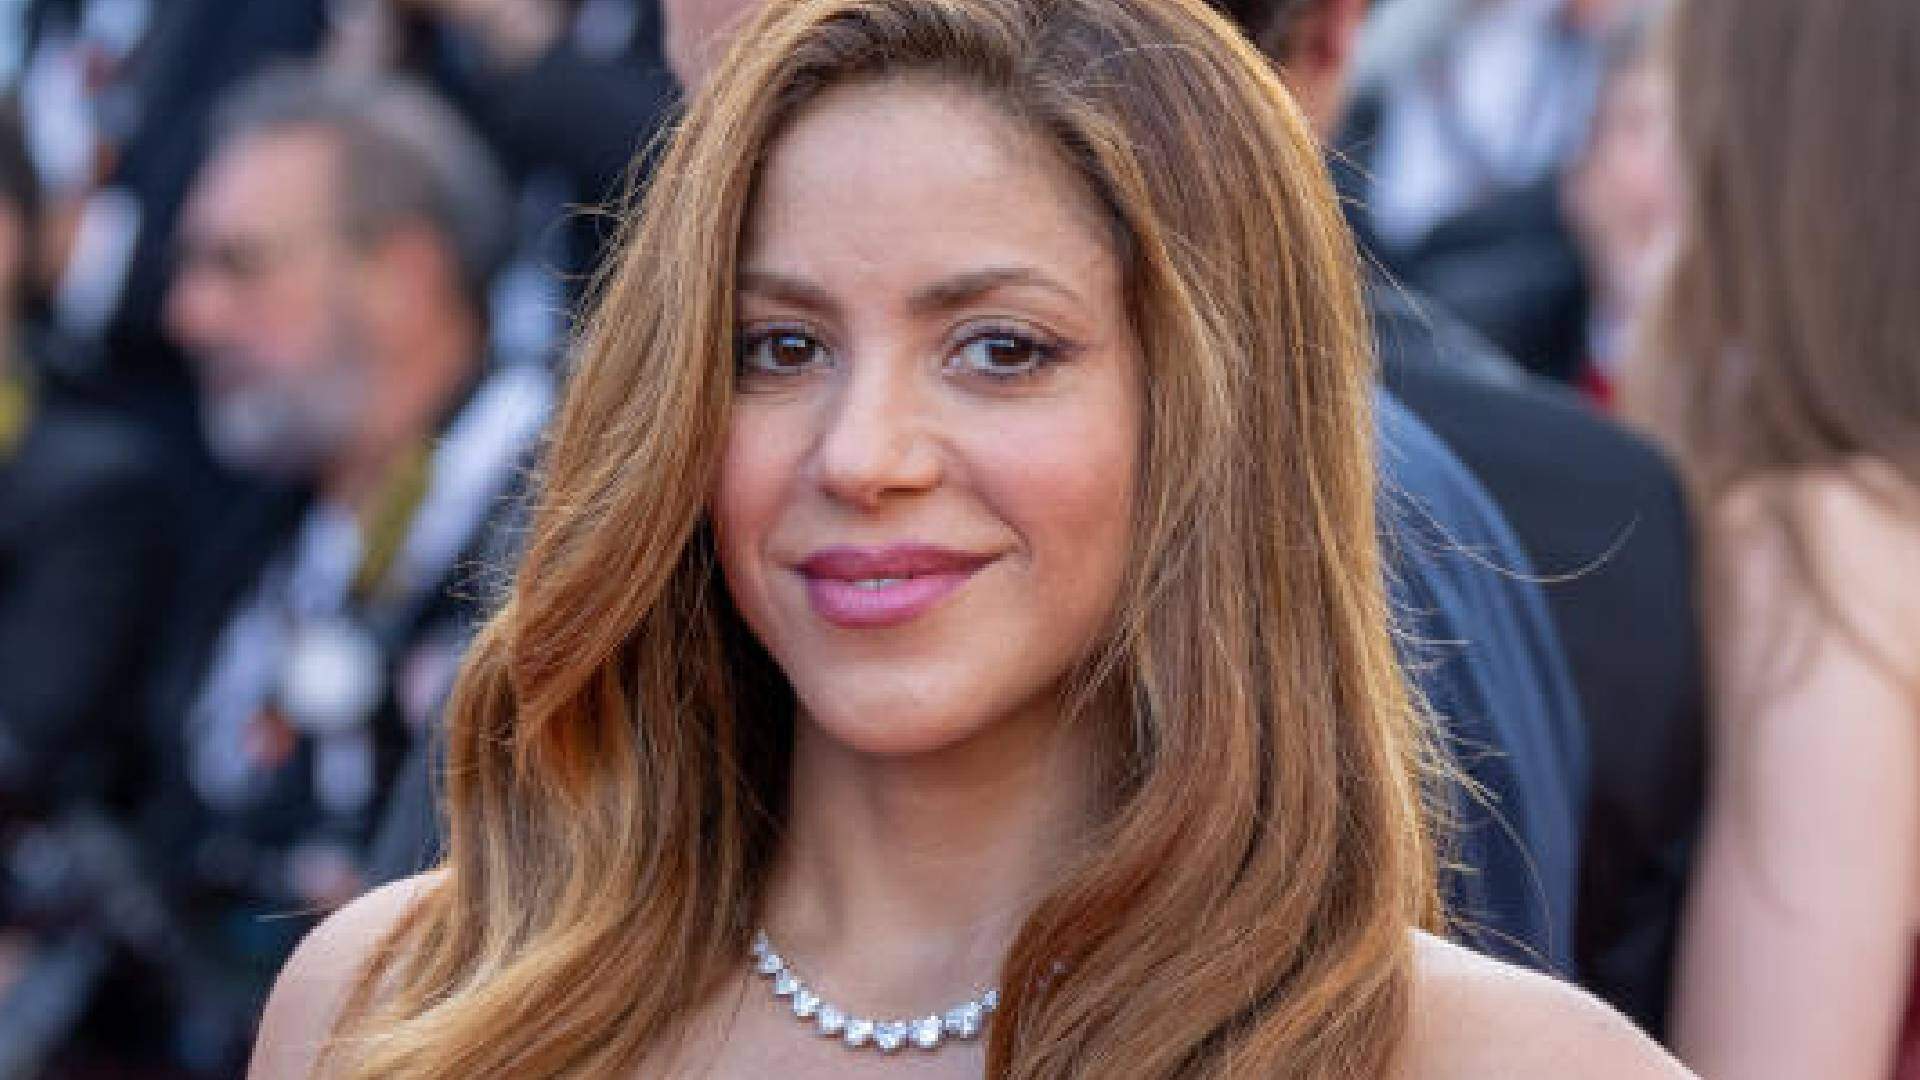 Quem é o novo affair de Shakira? Fotógrafo espanhol revela detalhes sobre suposto romance